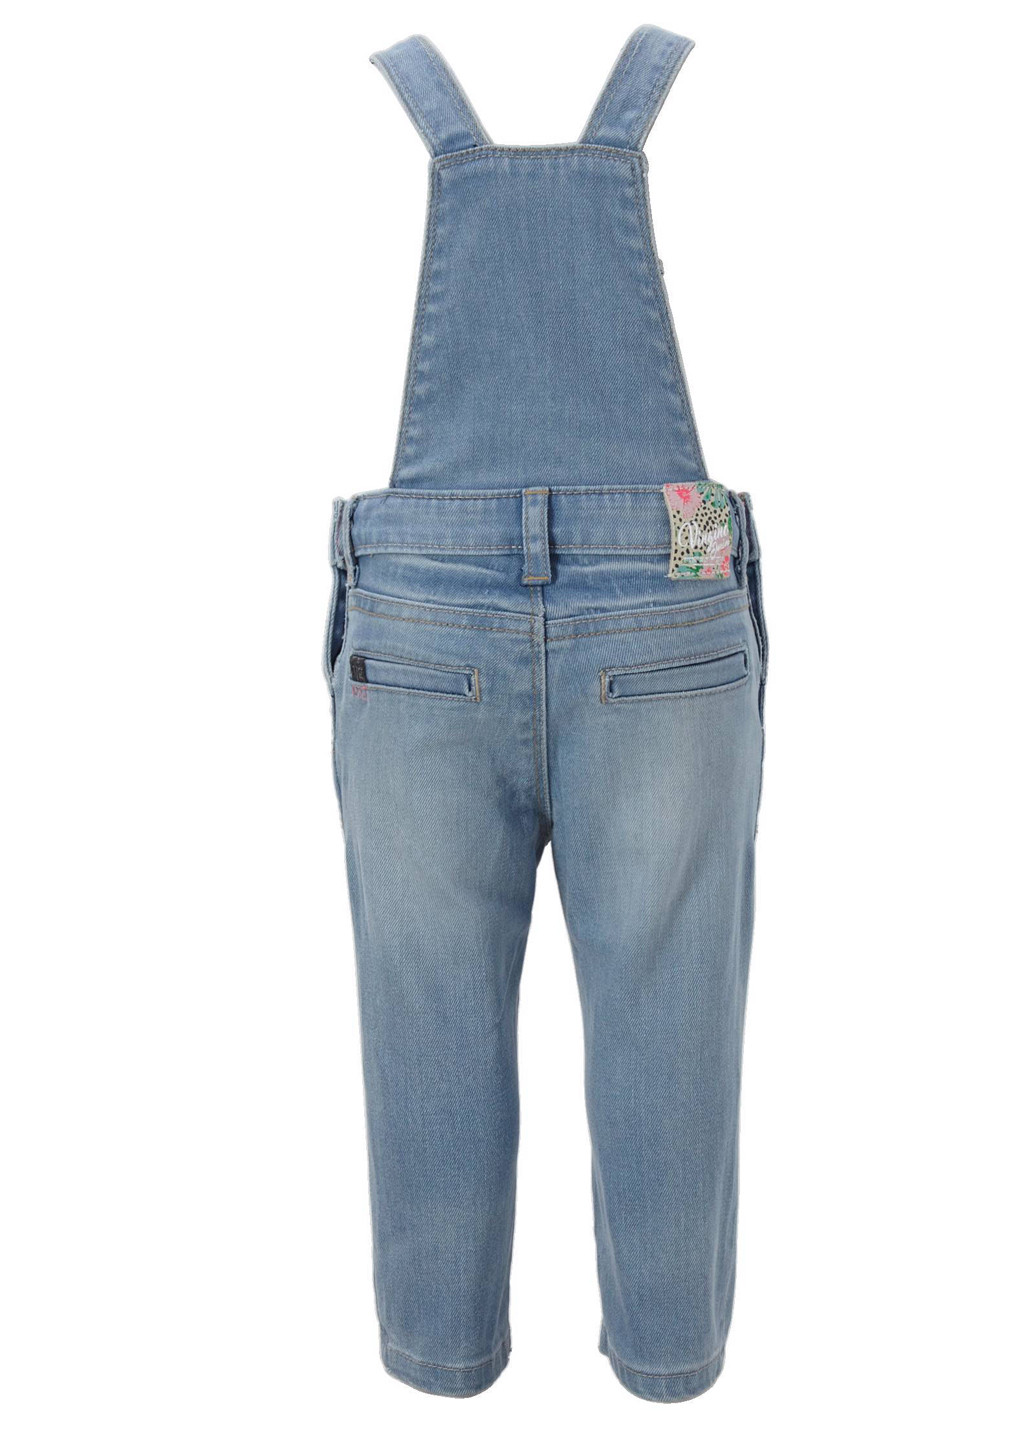 Комбинезон Vingino комбинезон-брюки однотонный голубой джинсовый хлопок